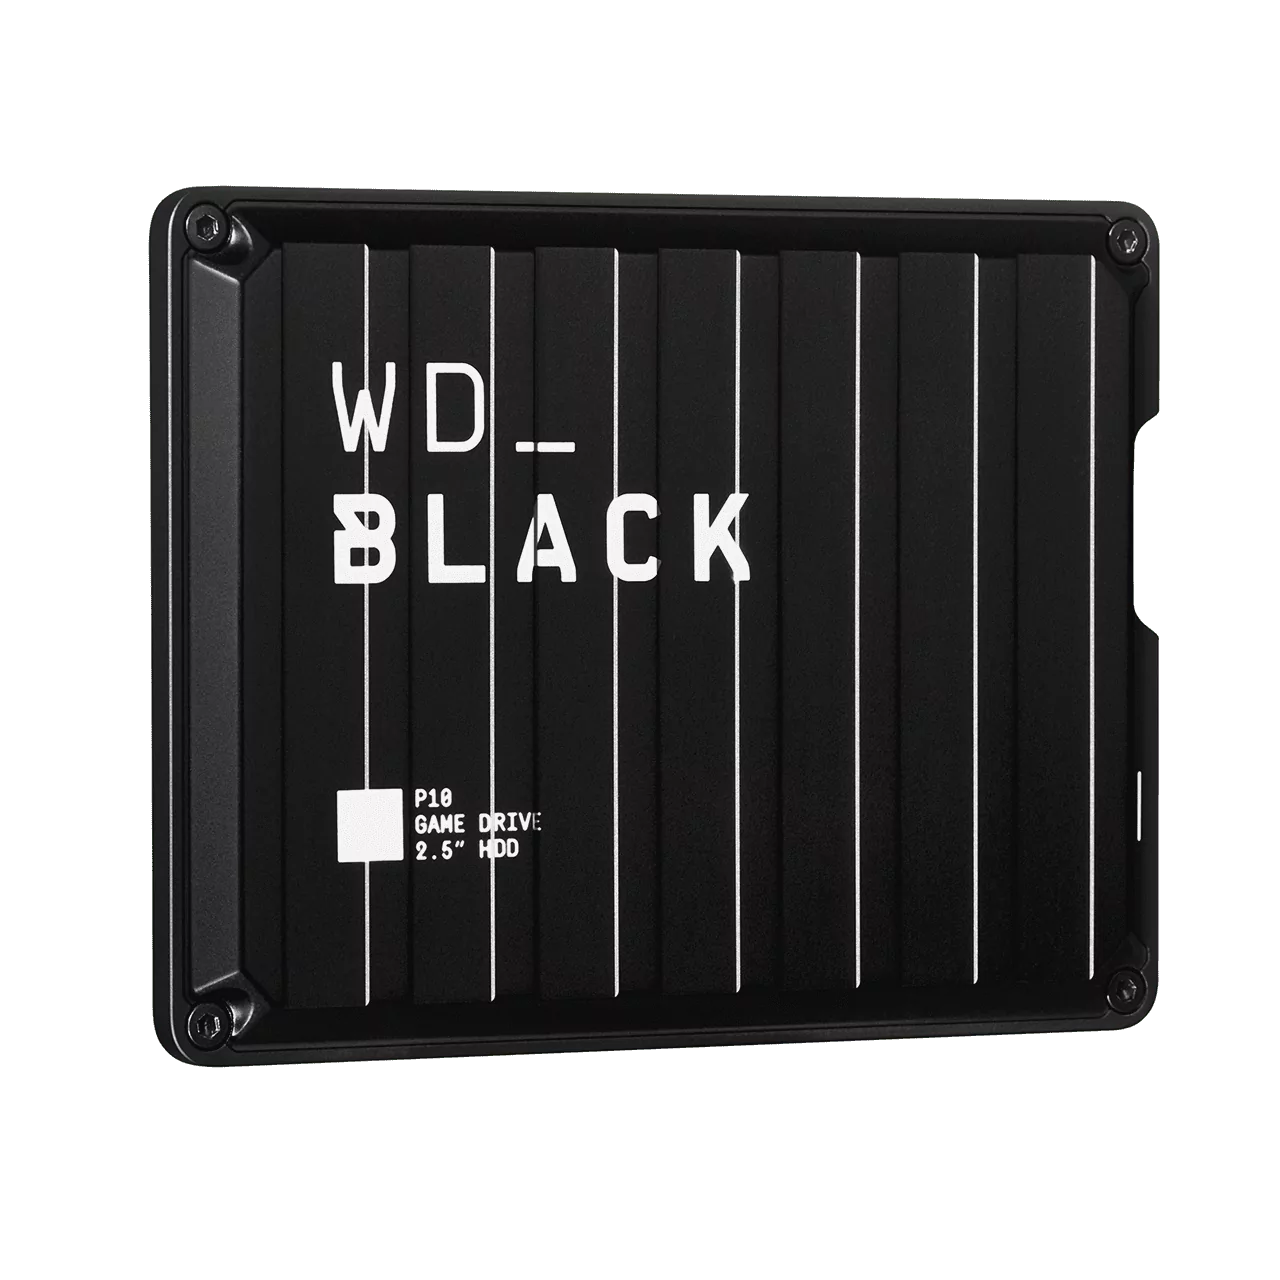 Внешний жесткий диск WD BLACK P10 Game Drive 2 ТБ для игровых косолей и ПК 11